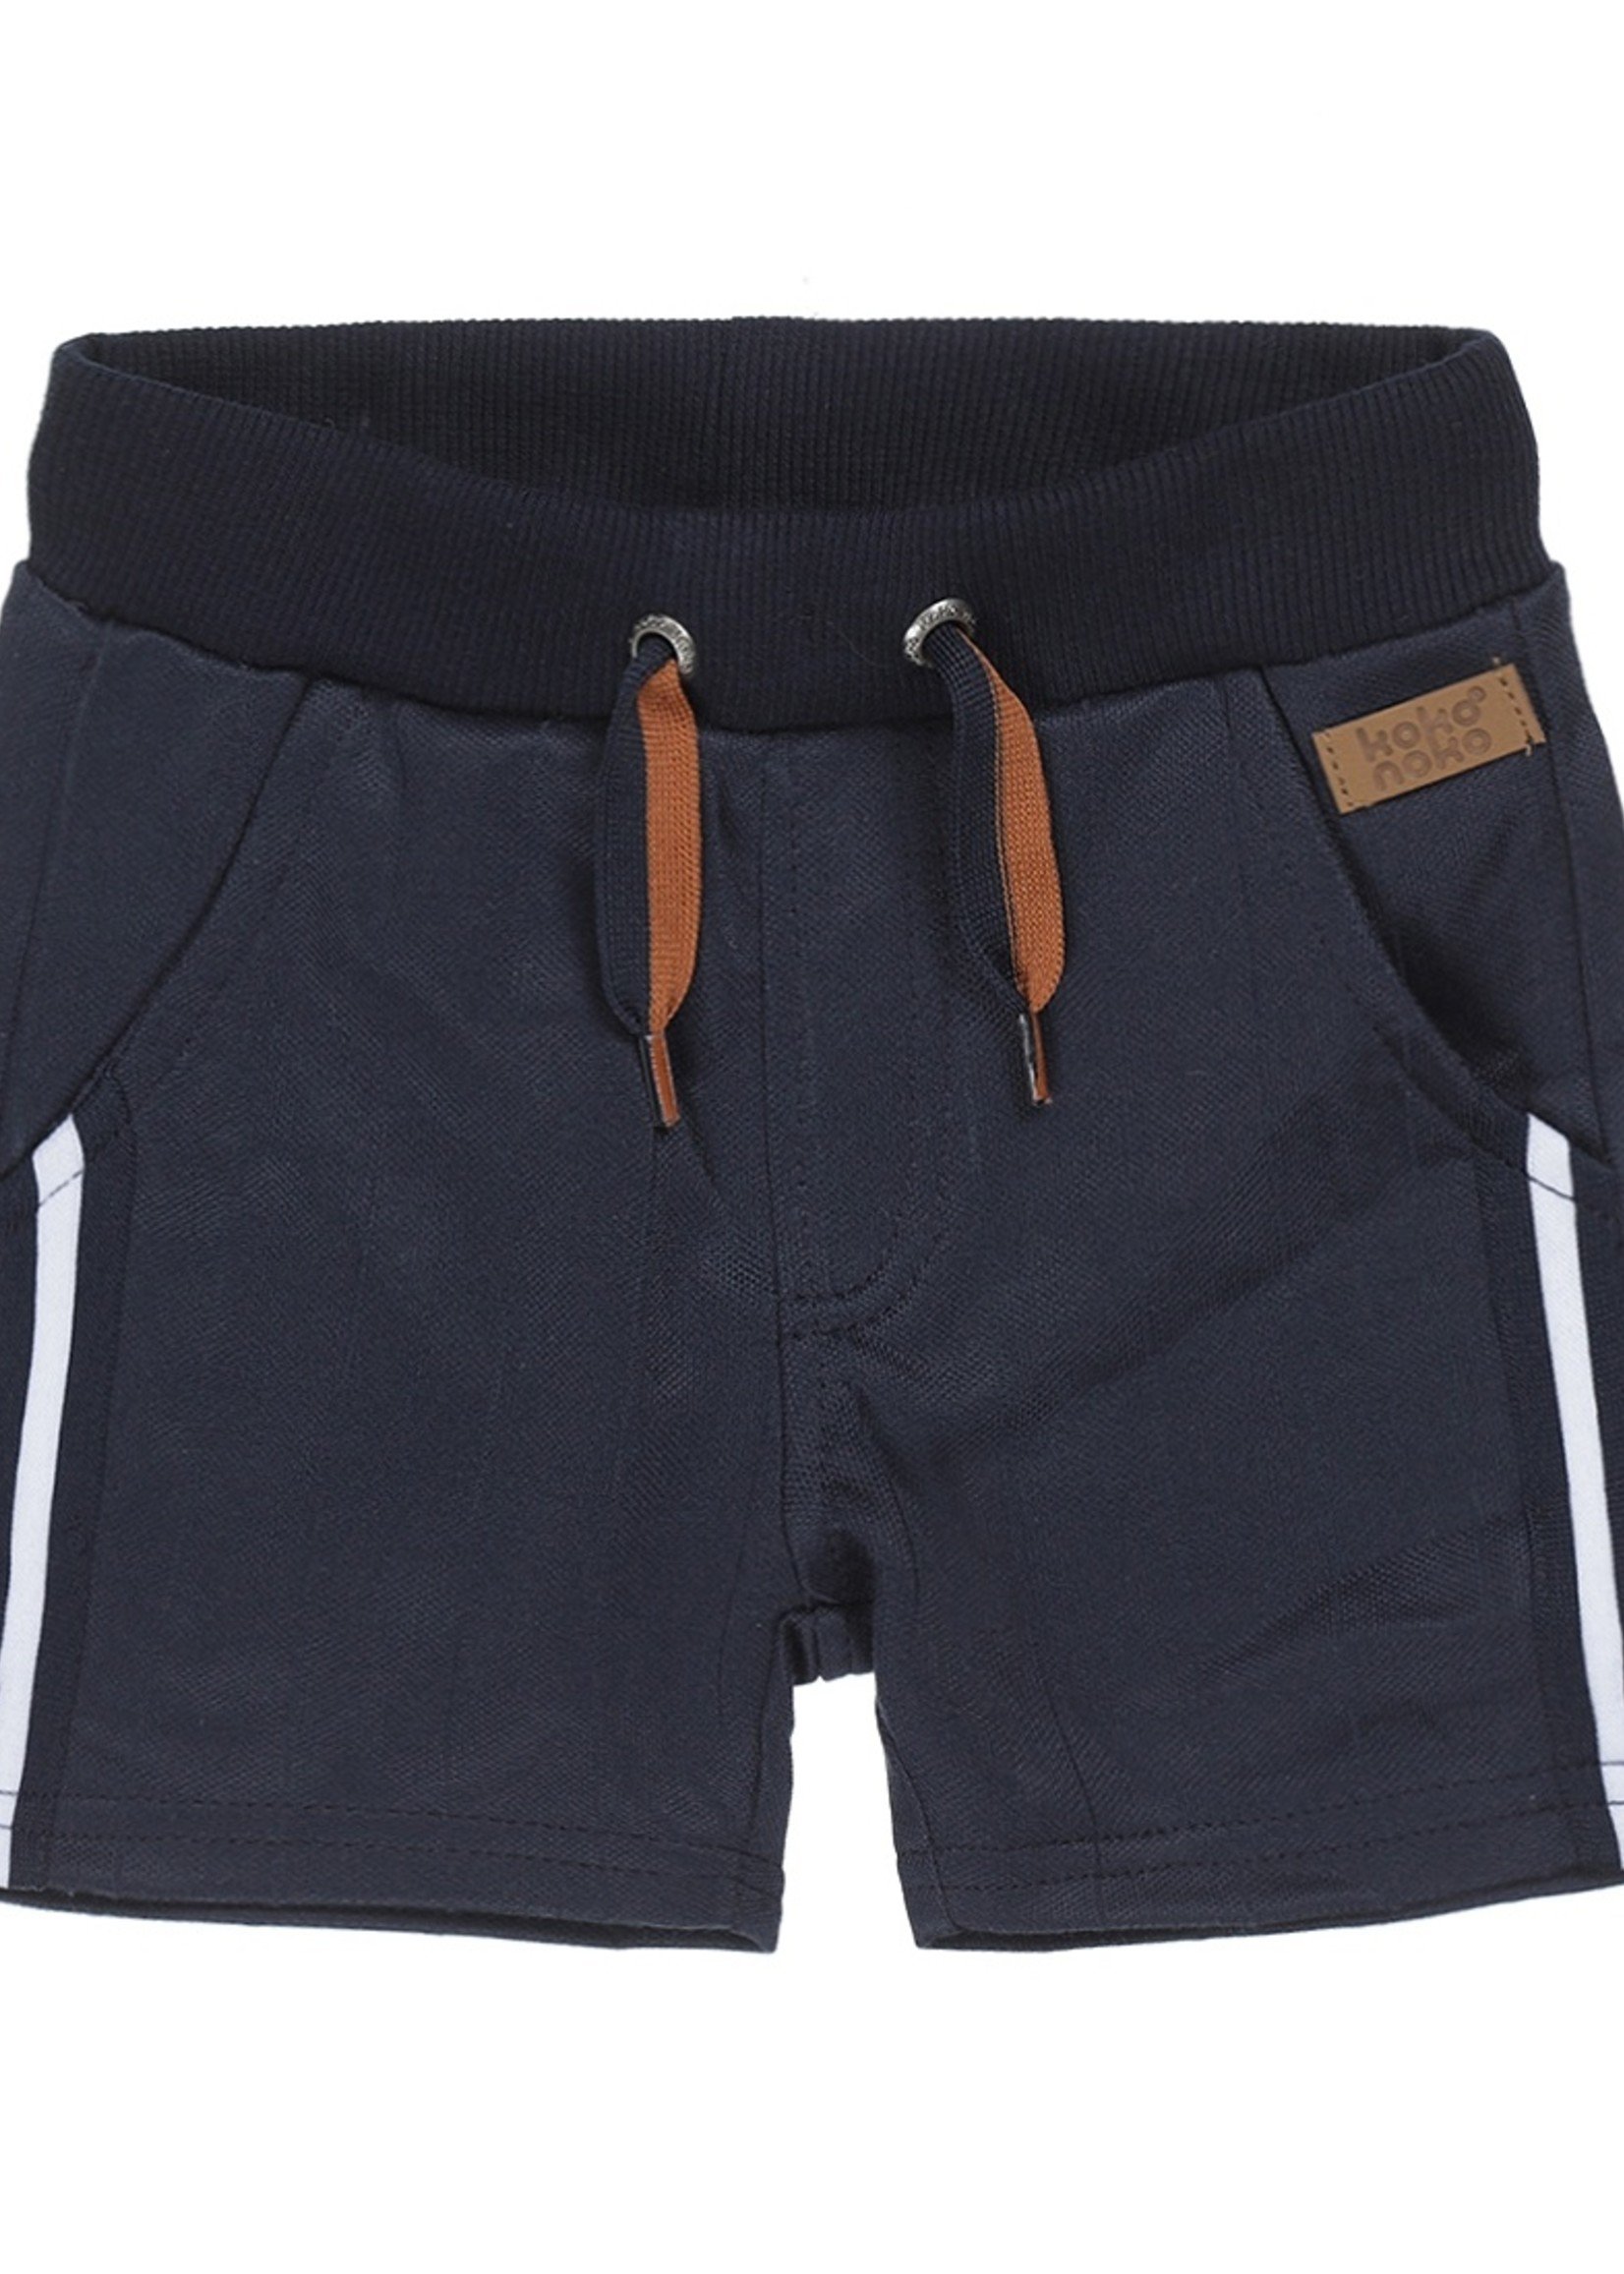 Koko Noko Shorts. Navy. V42854-37